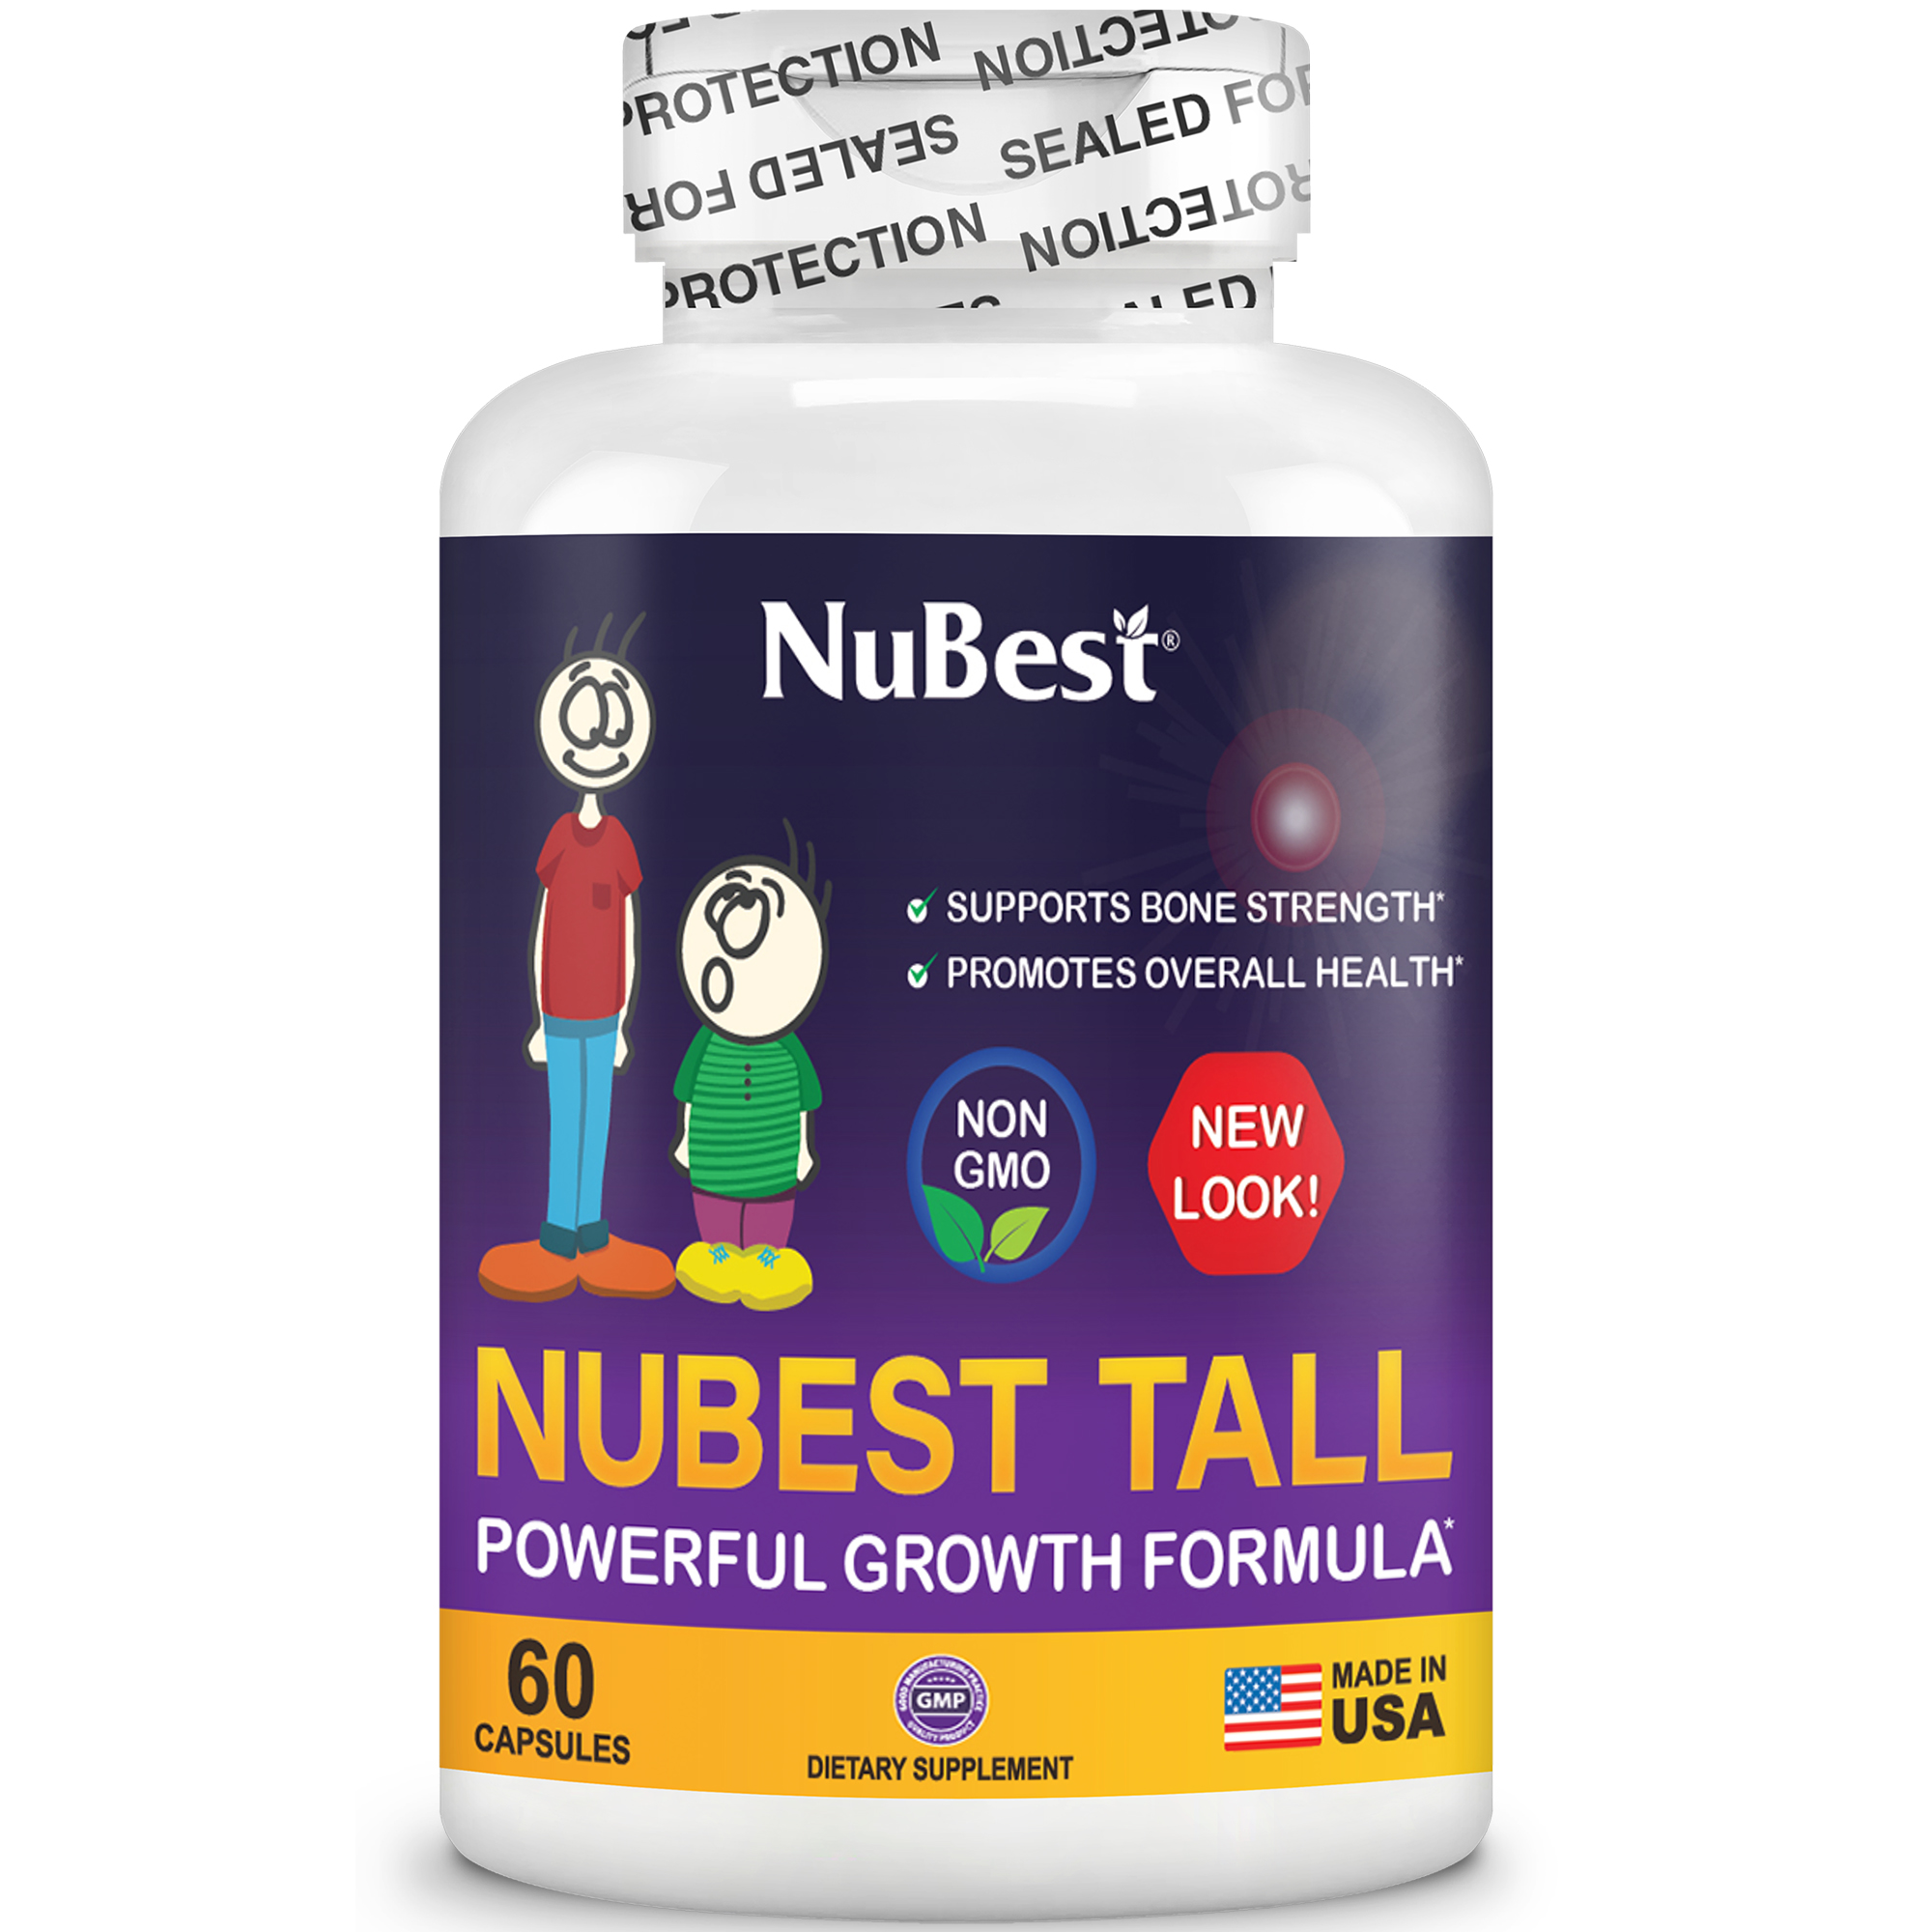 [Combo Kết Hợp] TPBVSK hỗ trợ Tăng Chiều Cao 2 NuBest Tall (từ 5-20 Tuổi) và 1 NuBest Tall Kids (từ 2-9 Tuổi) tặng 1 NuBest Tall Kids